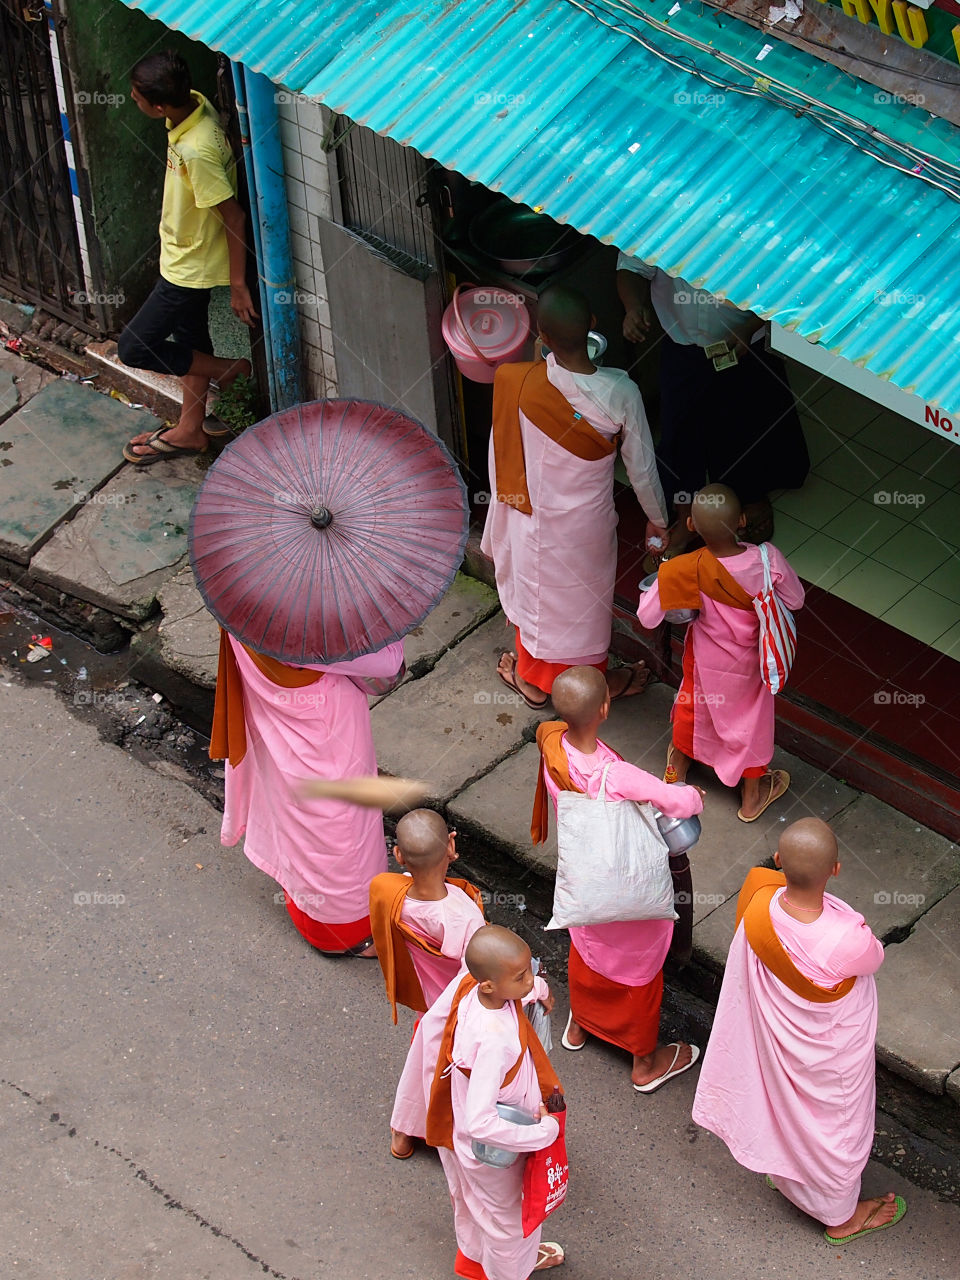 Burmeses nun on the charity walk